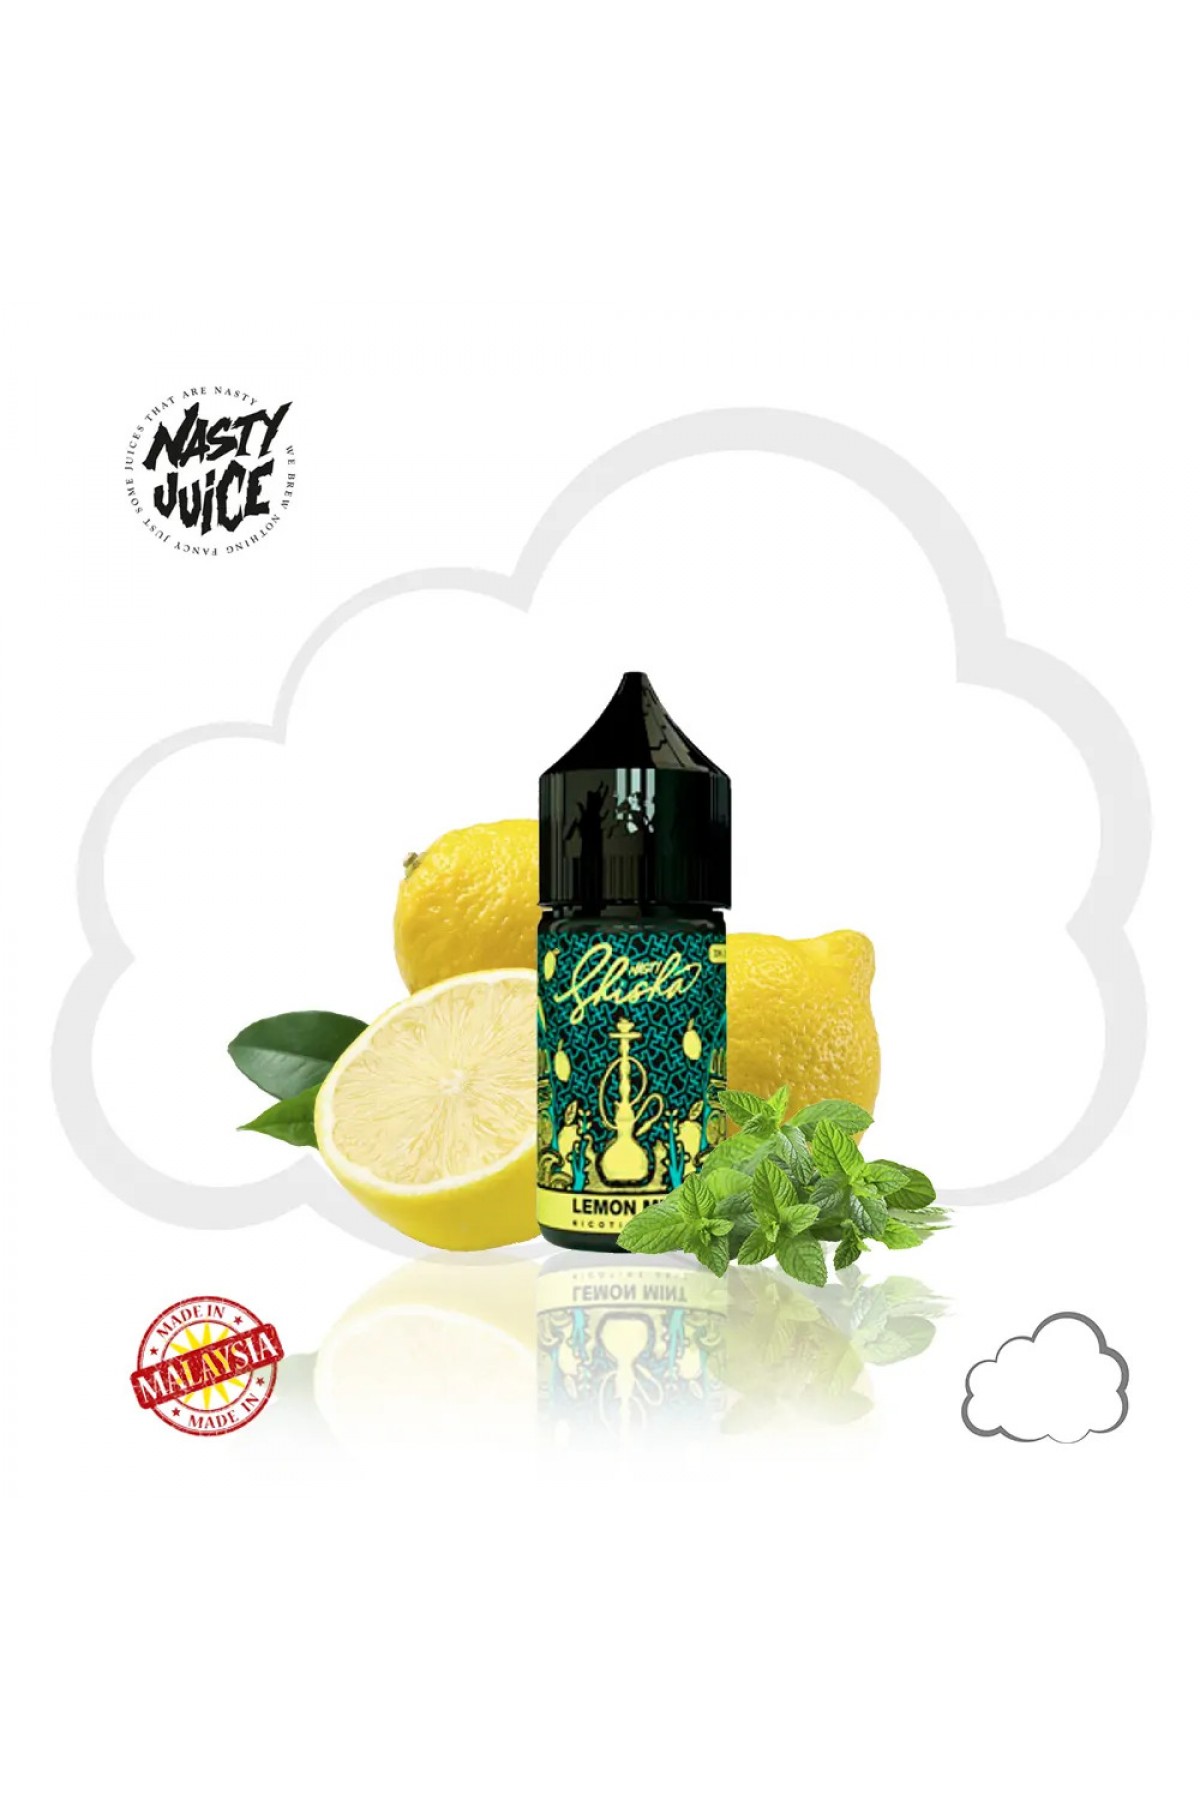 Nasty Salt - Lemon Mint (30mL) Shisha Salt Likit